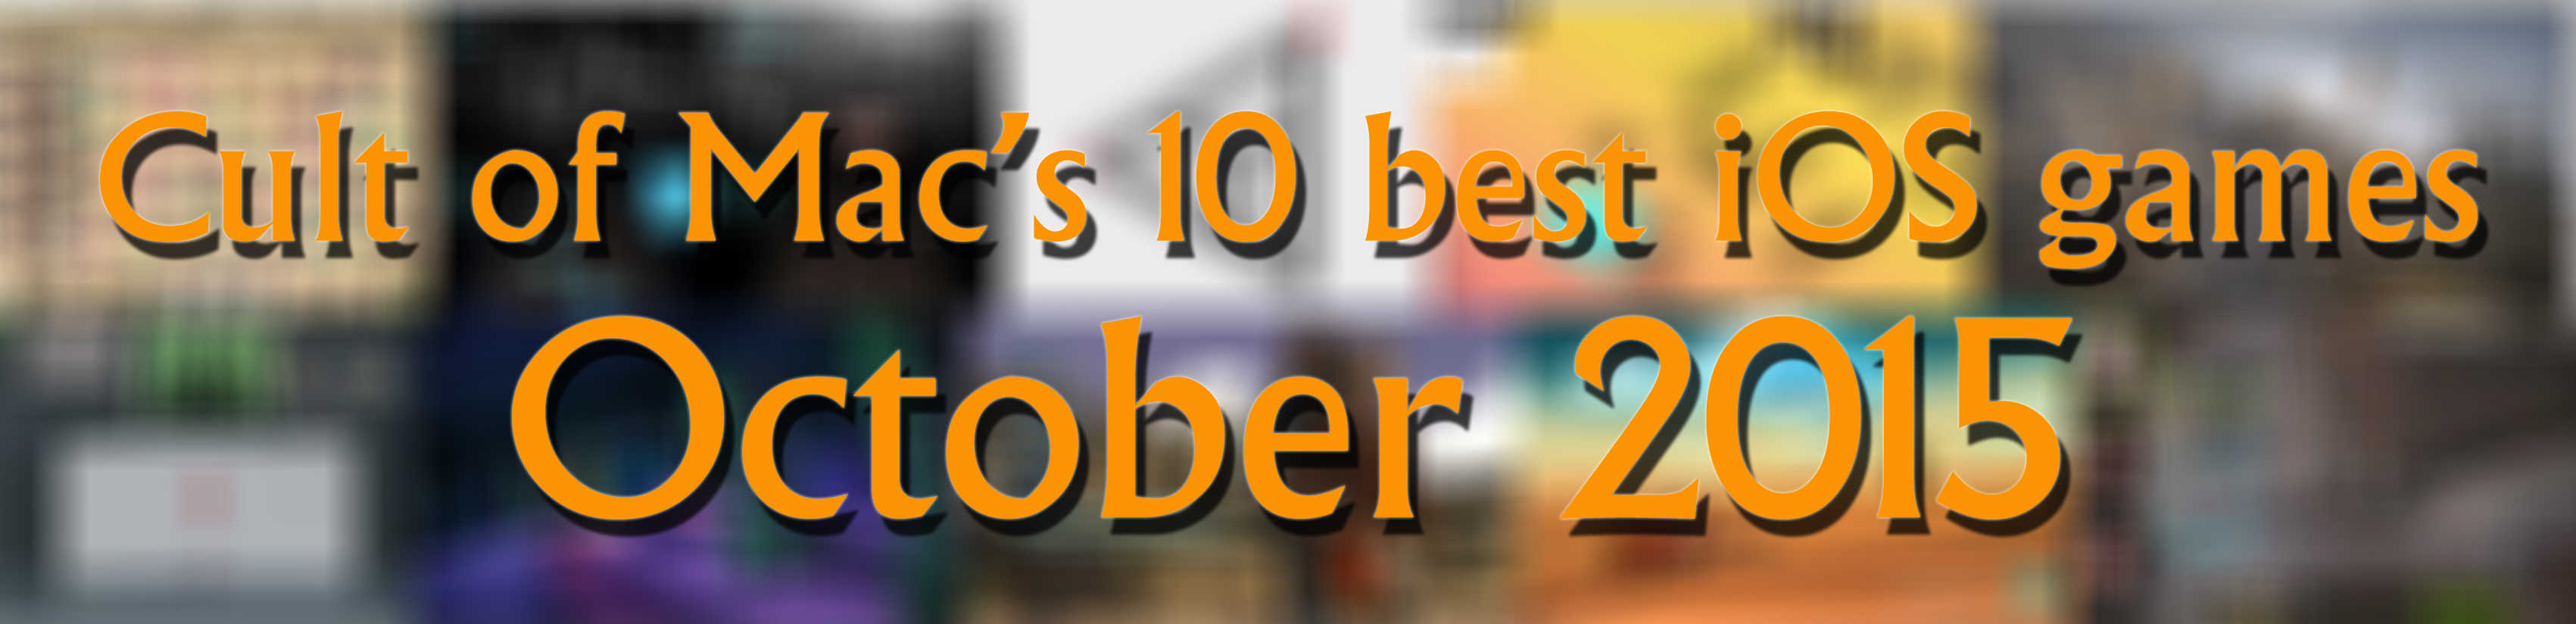 10 best ios games October 2015